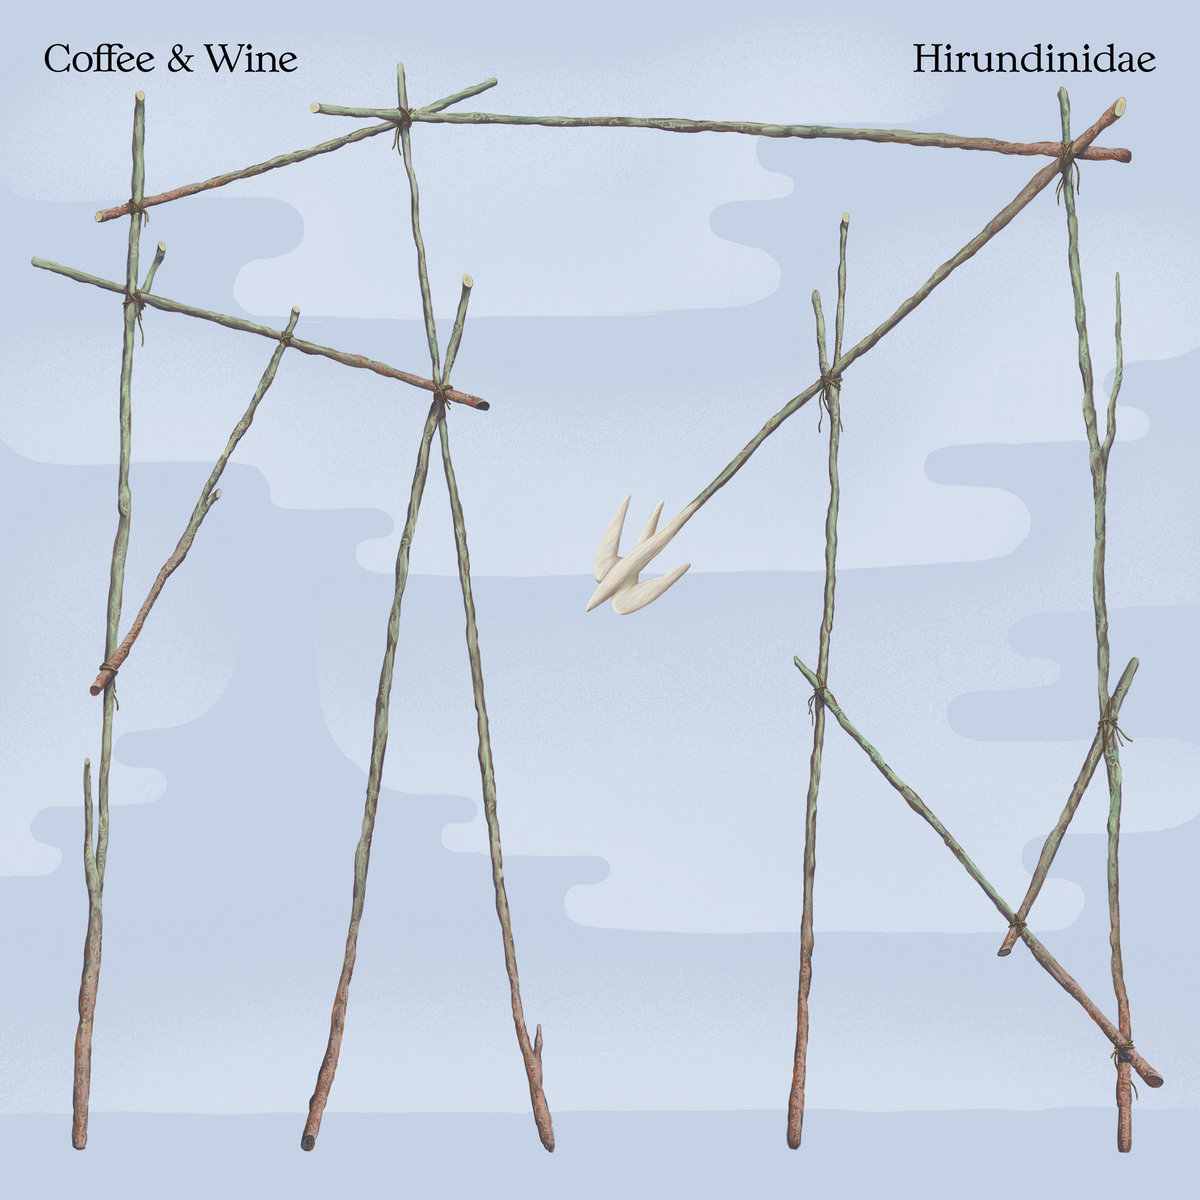 Coffee & Wine "Hirundinidae" LP